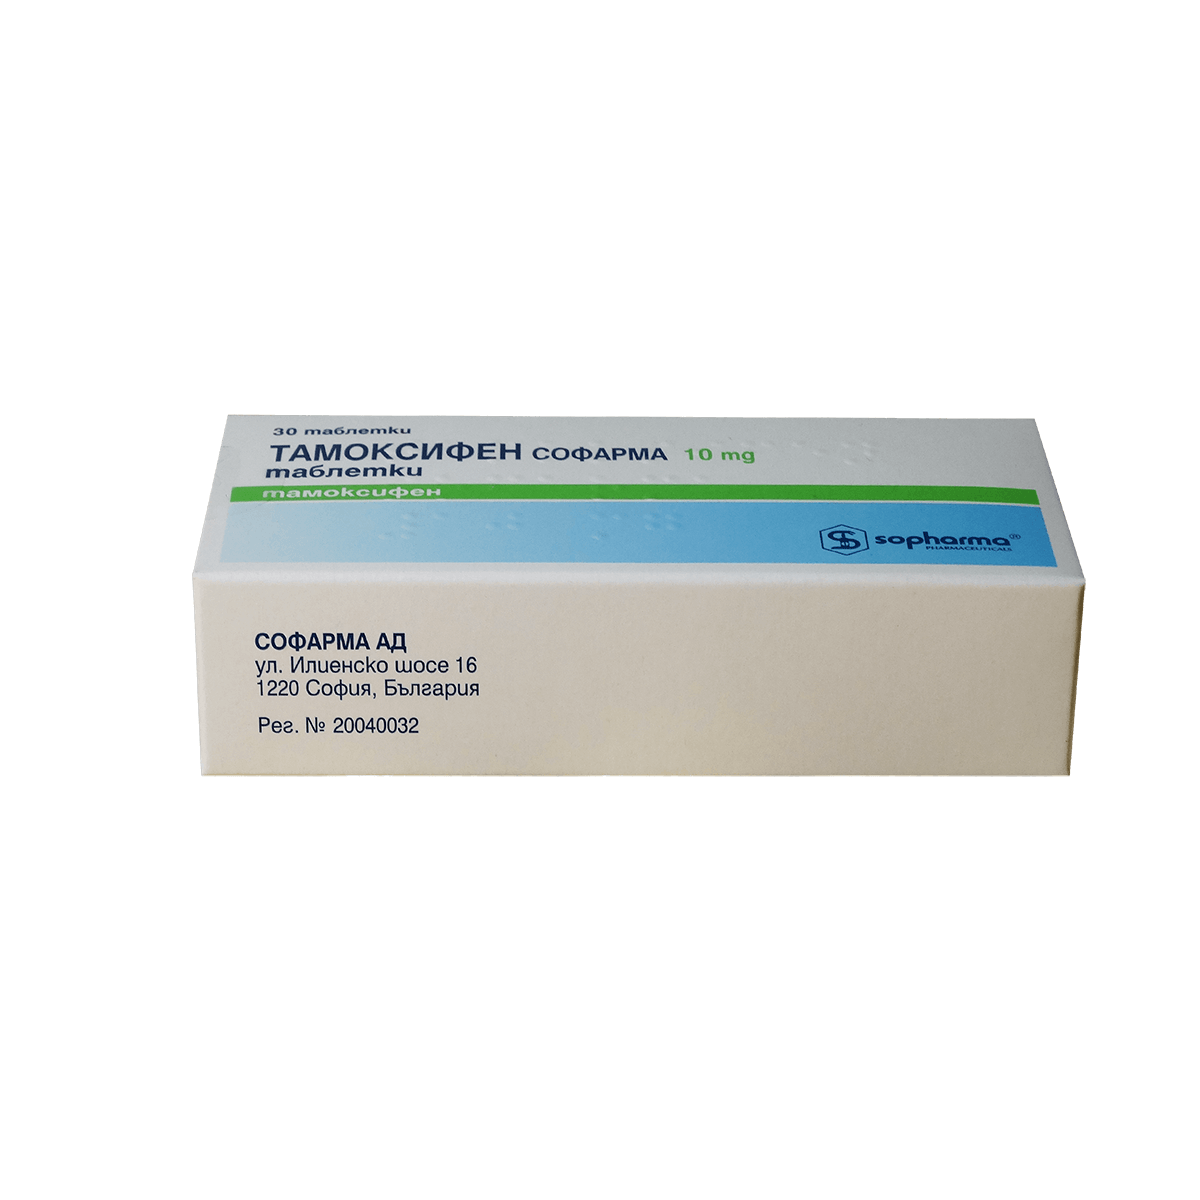 Tamoxifen-tablets-10mg-antiestrogen-nolvadex-Sopharma